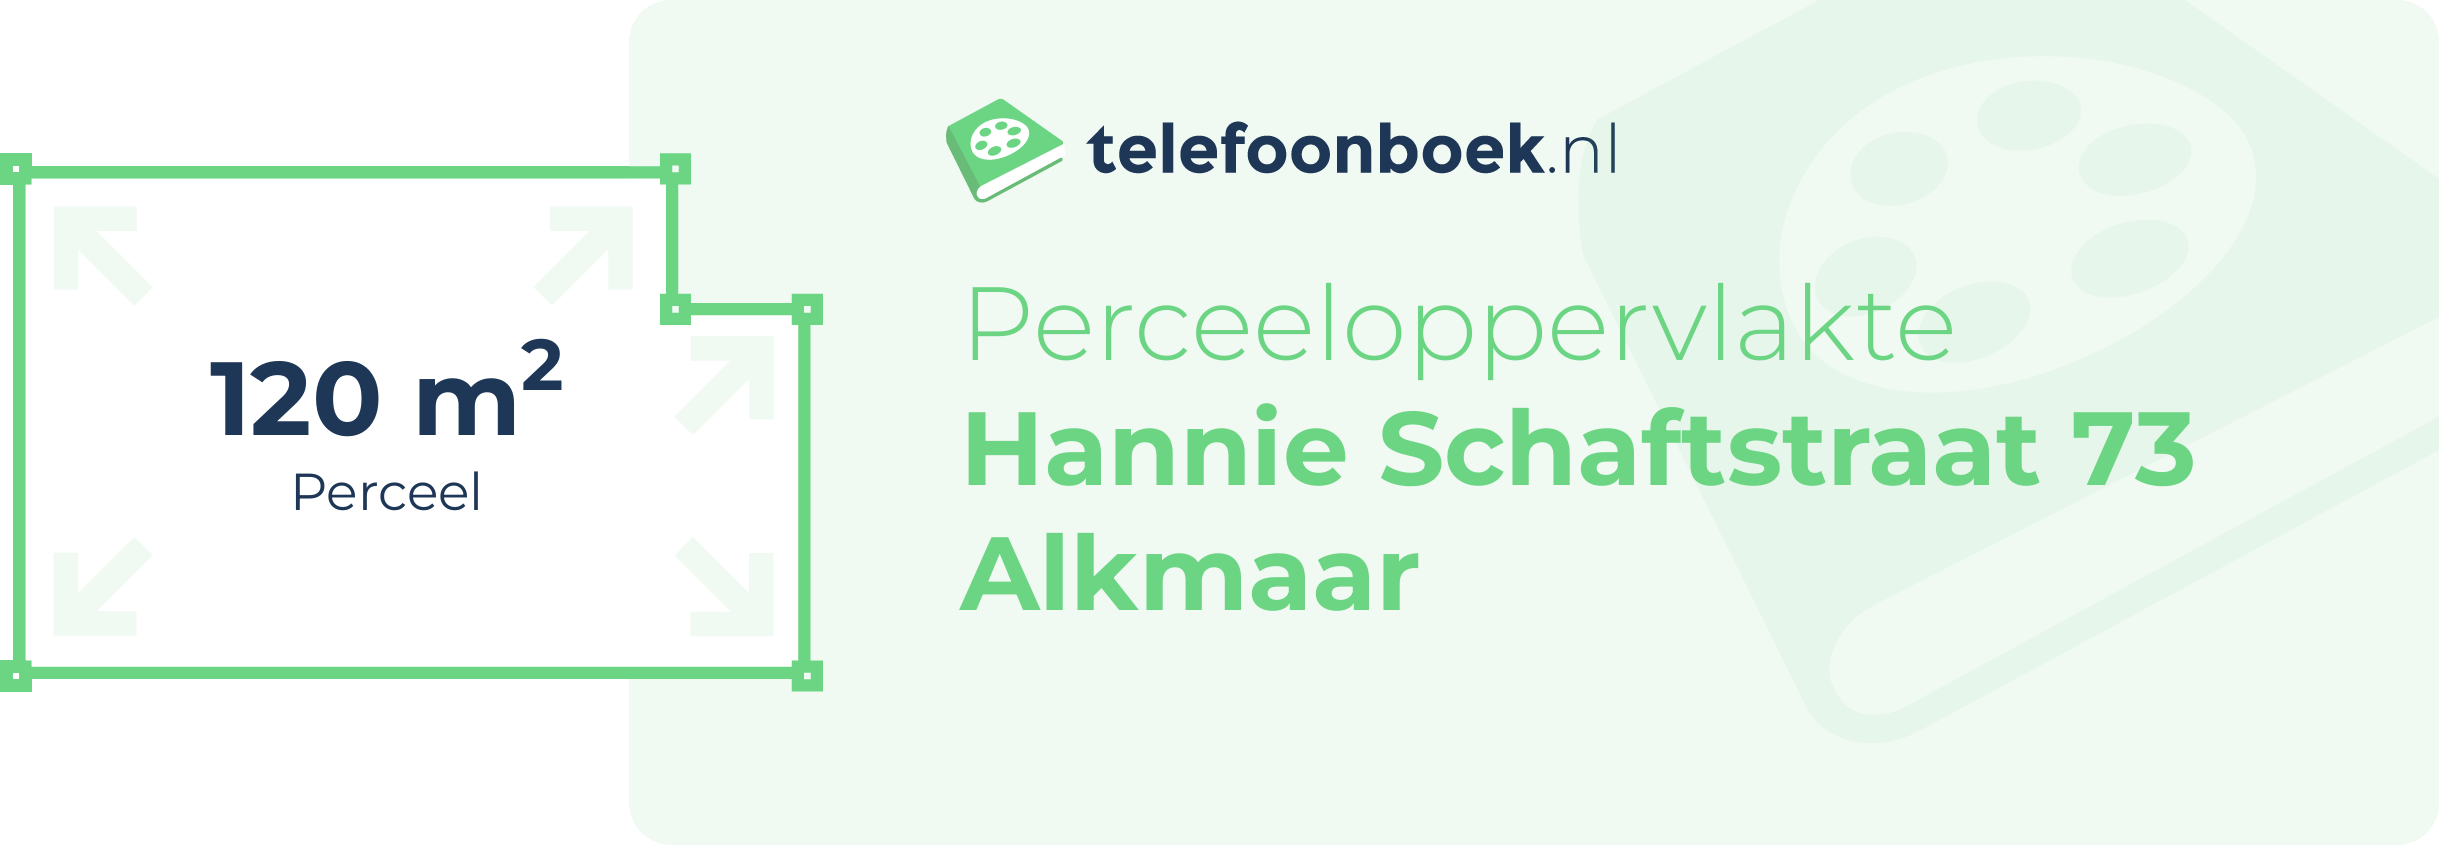 Perceeloppervlakte Hannie Schaftstraat 73 Alkmaar